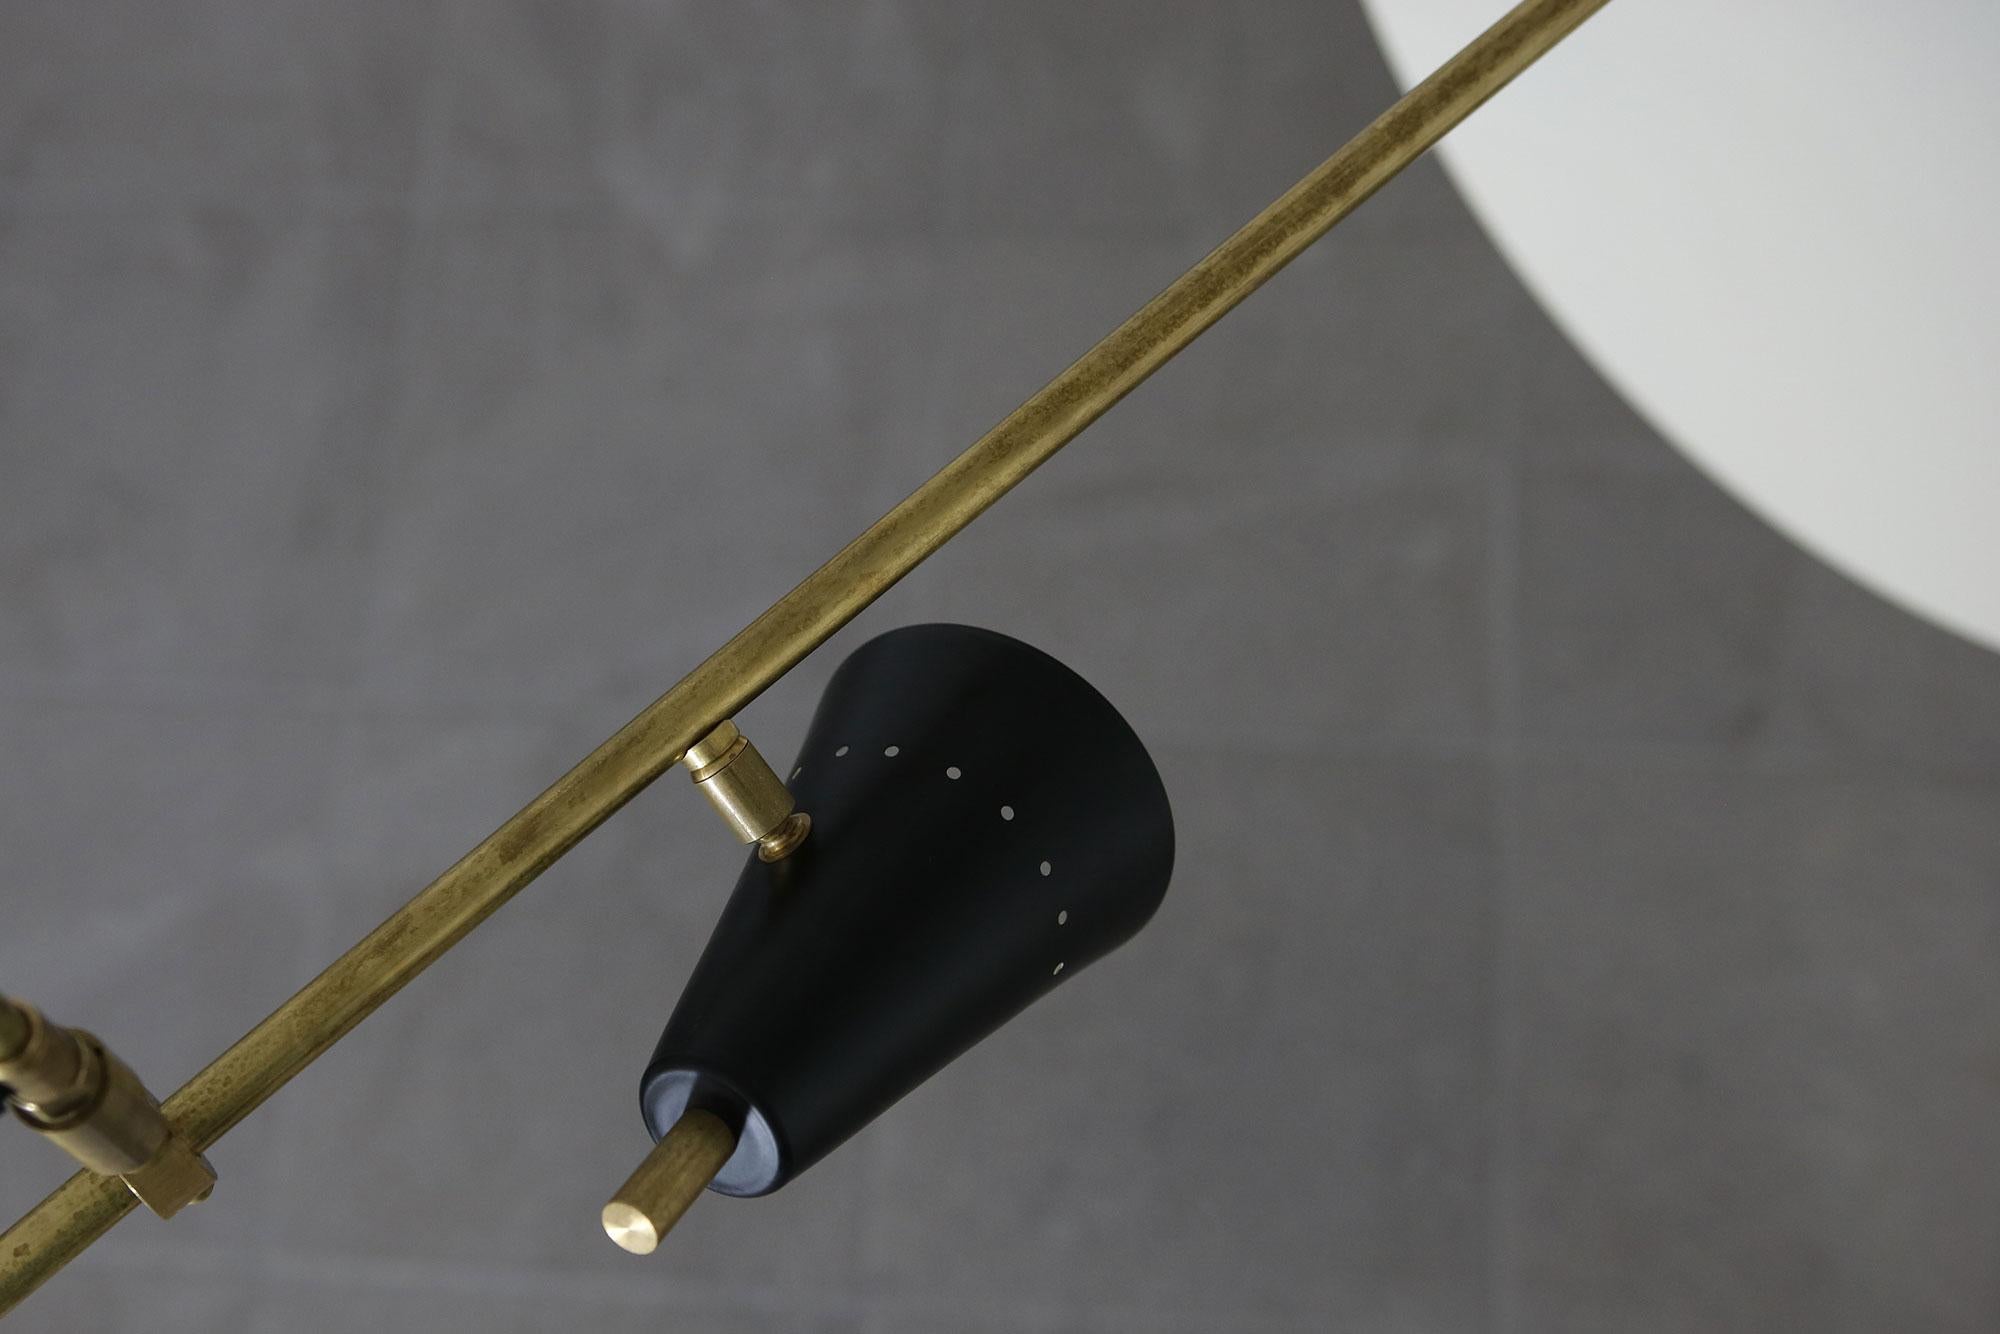 Metal Long & Adjustable Italian Modern Ceiling Lamp, Stilnovo Style Chandelier Pendant